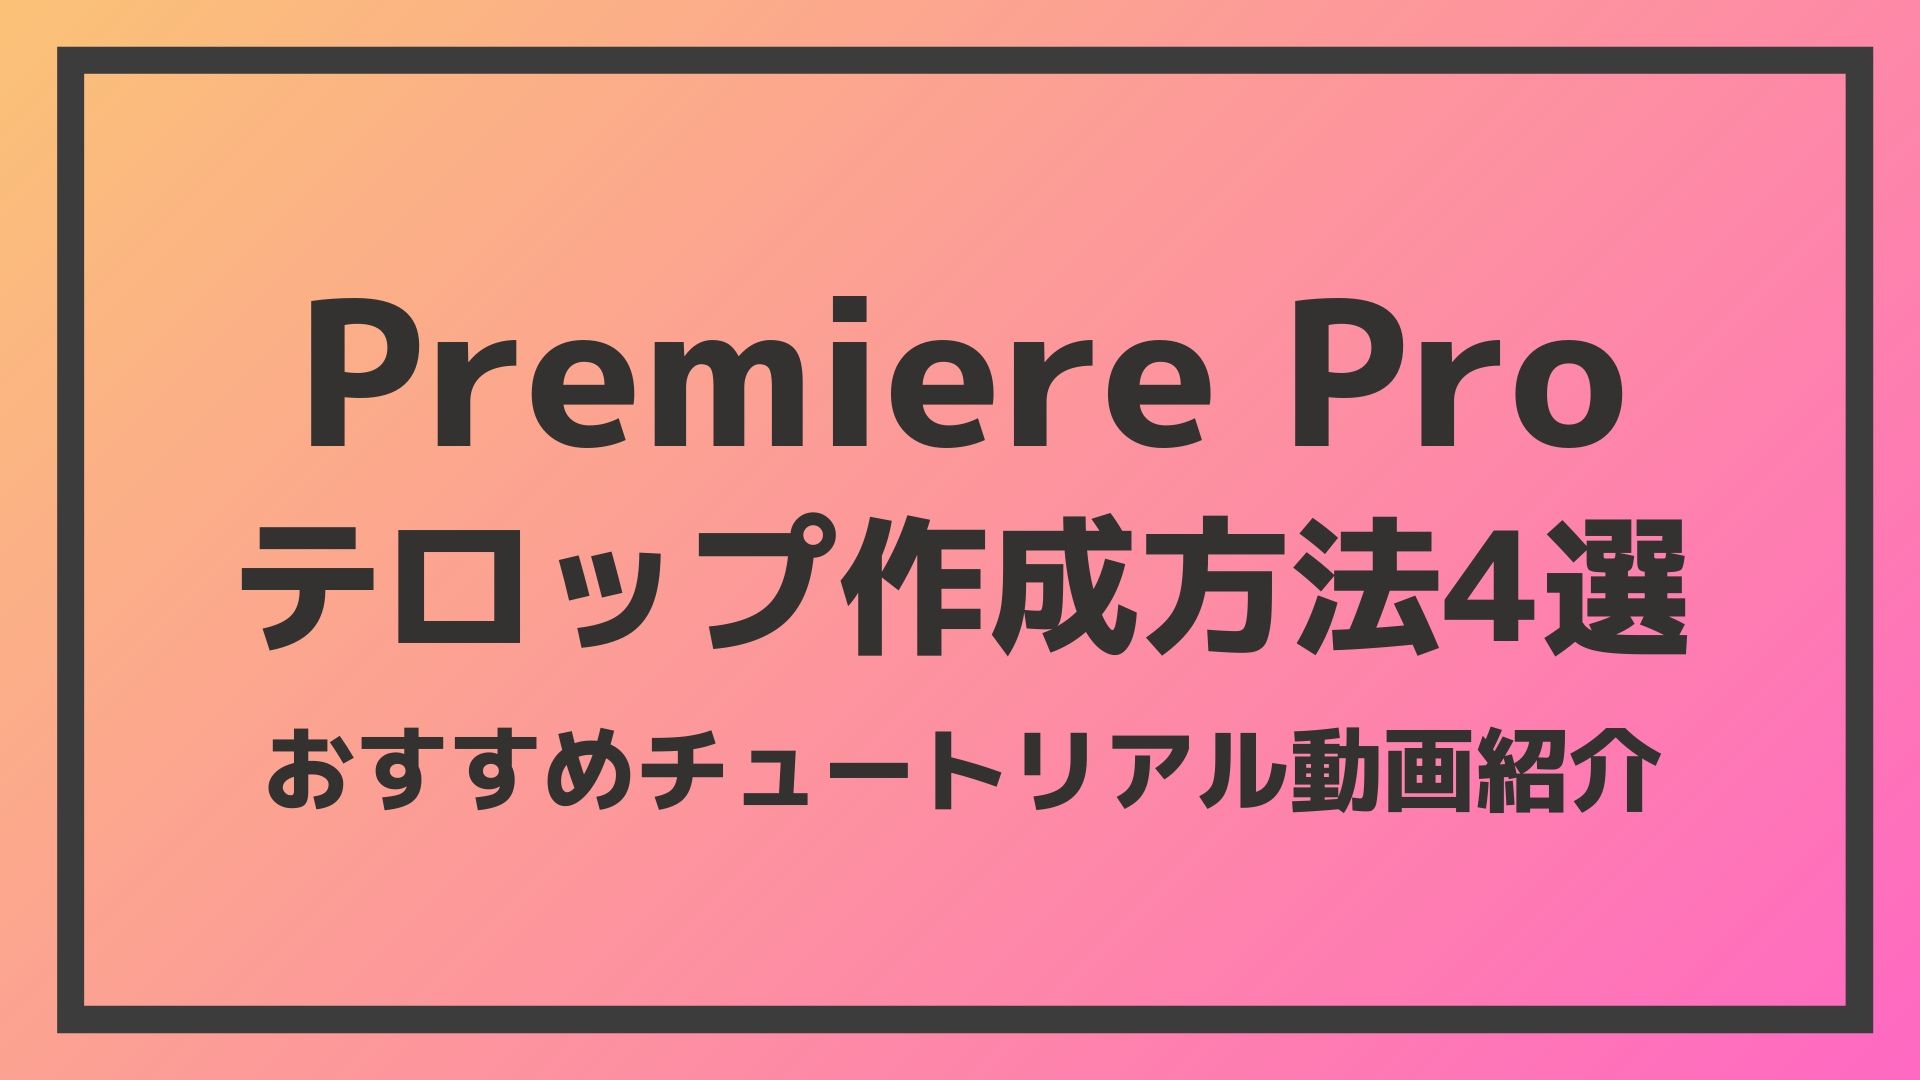 Premiere Proテロップ作成方法4選 おすすめチュートリアル動画 ライターのスキルアップ雑記